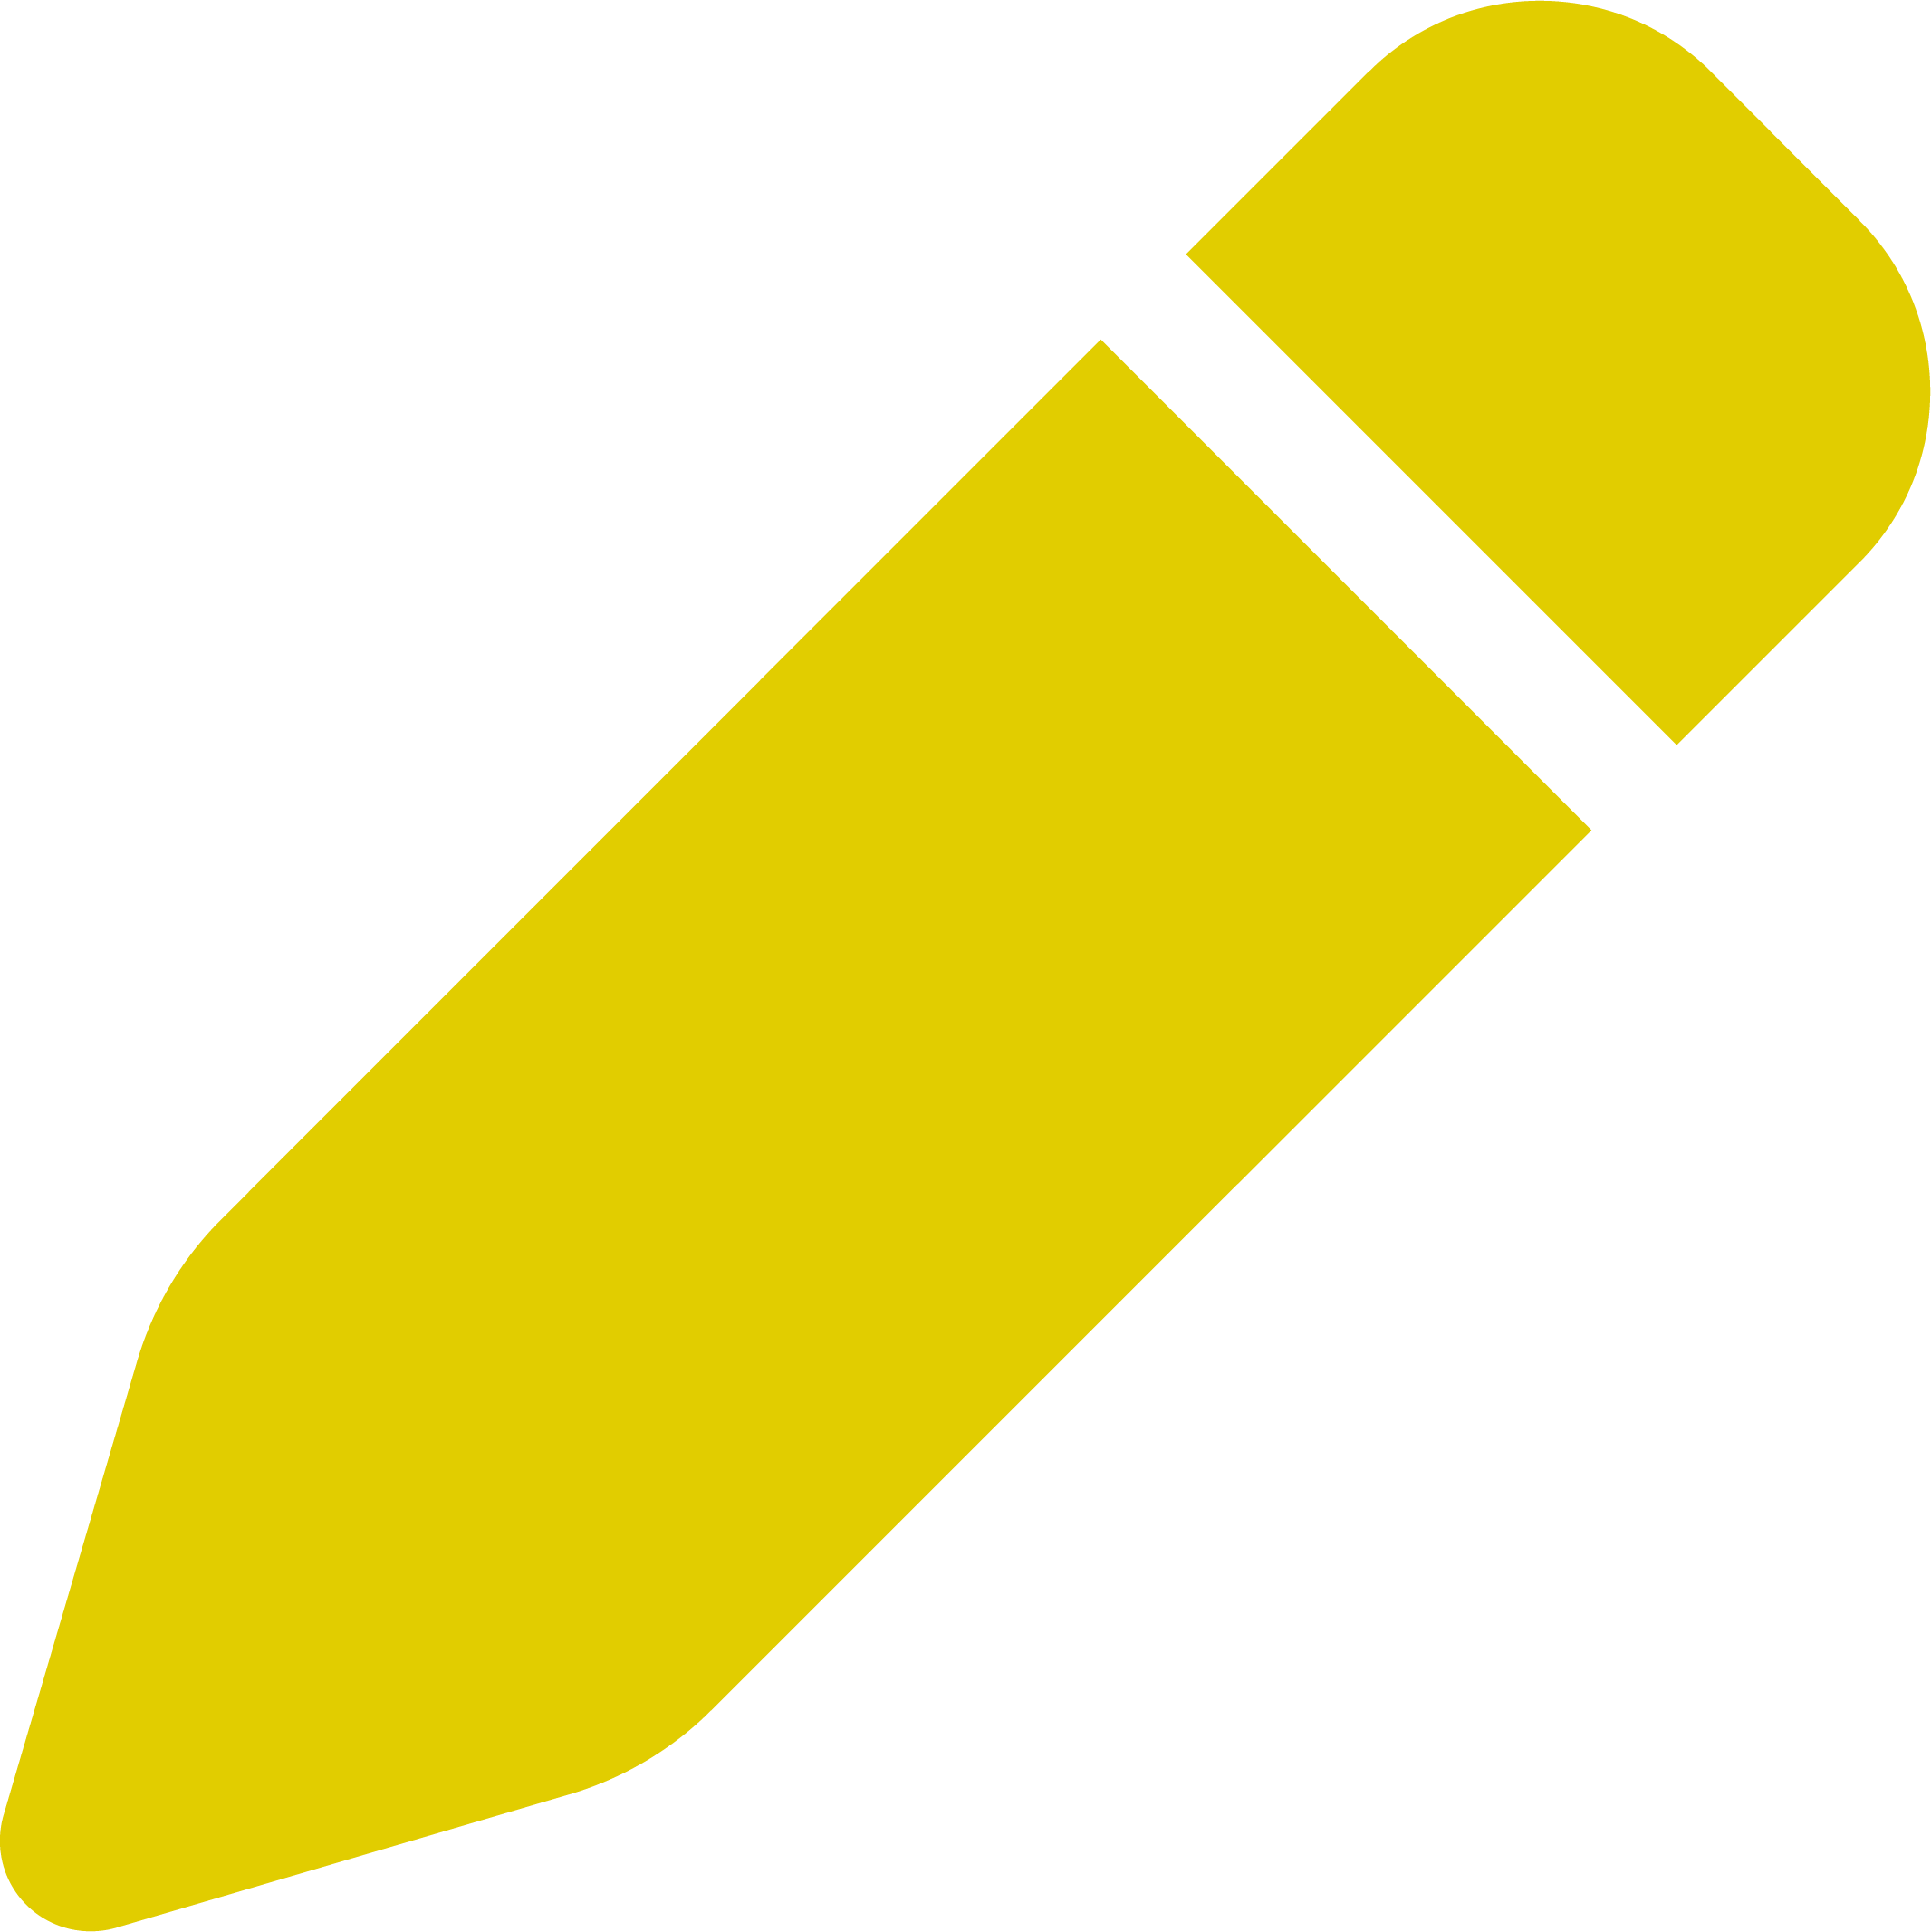 Yellow pen icon